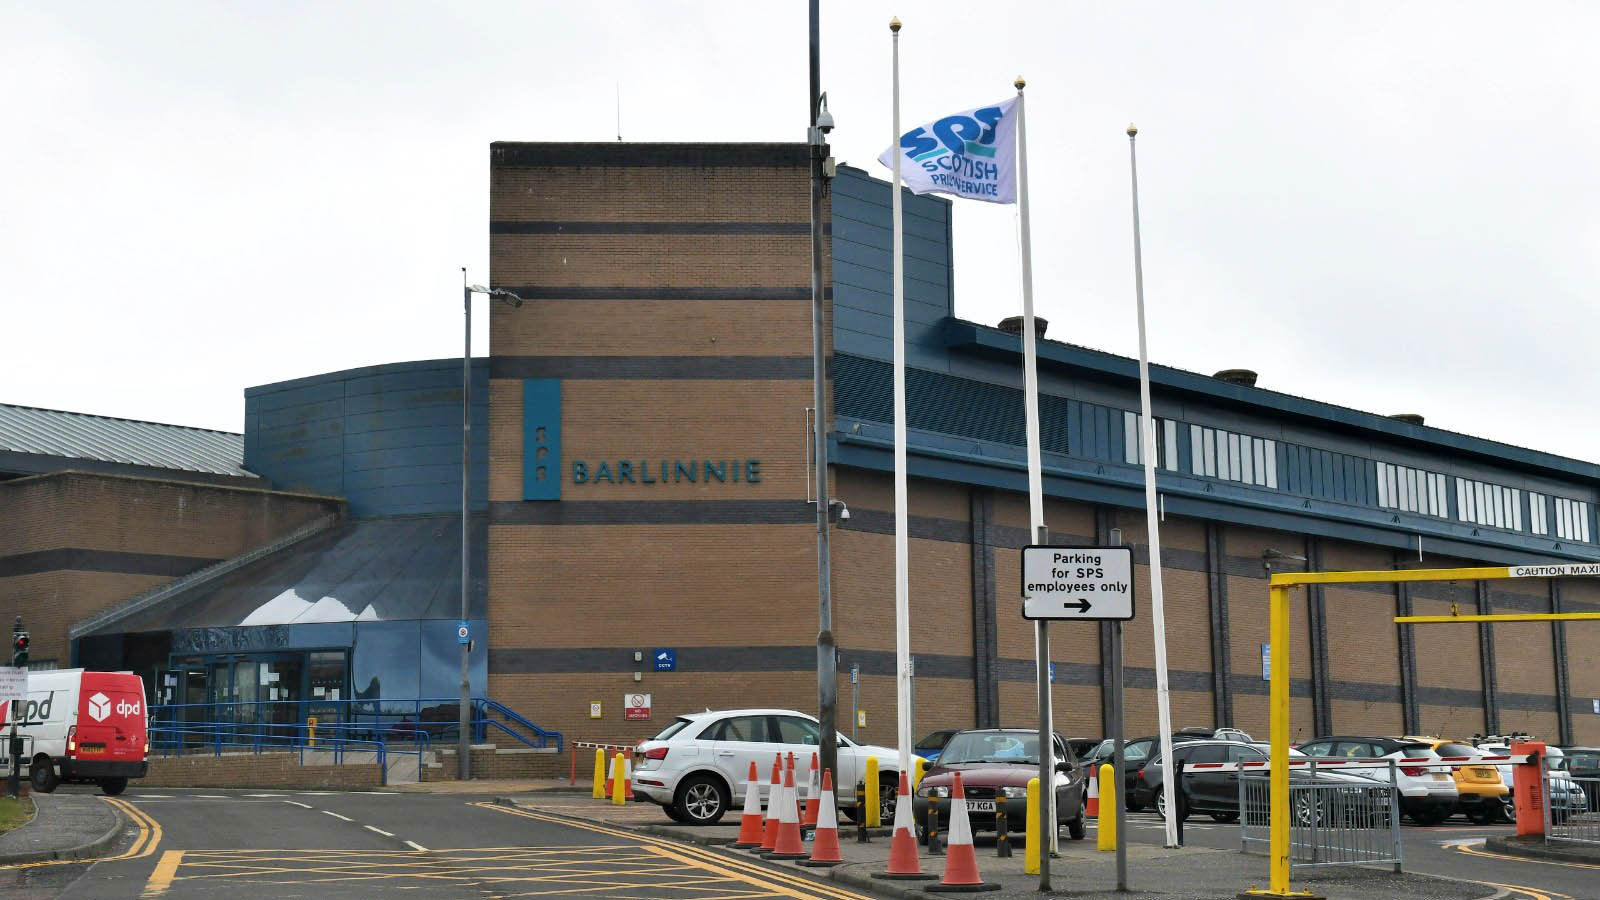 HM Prison Barlinnie in Glasgow.